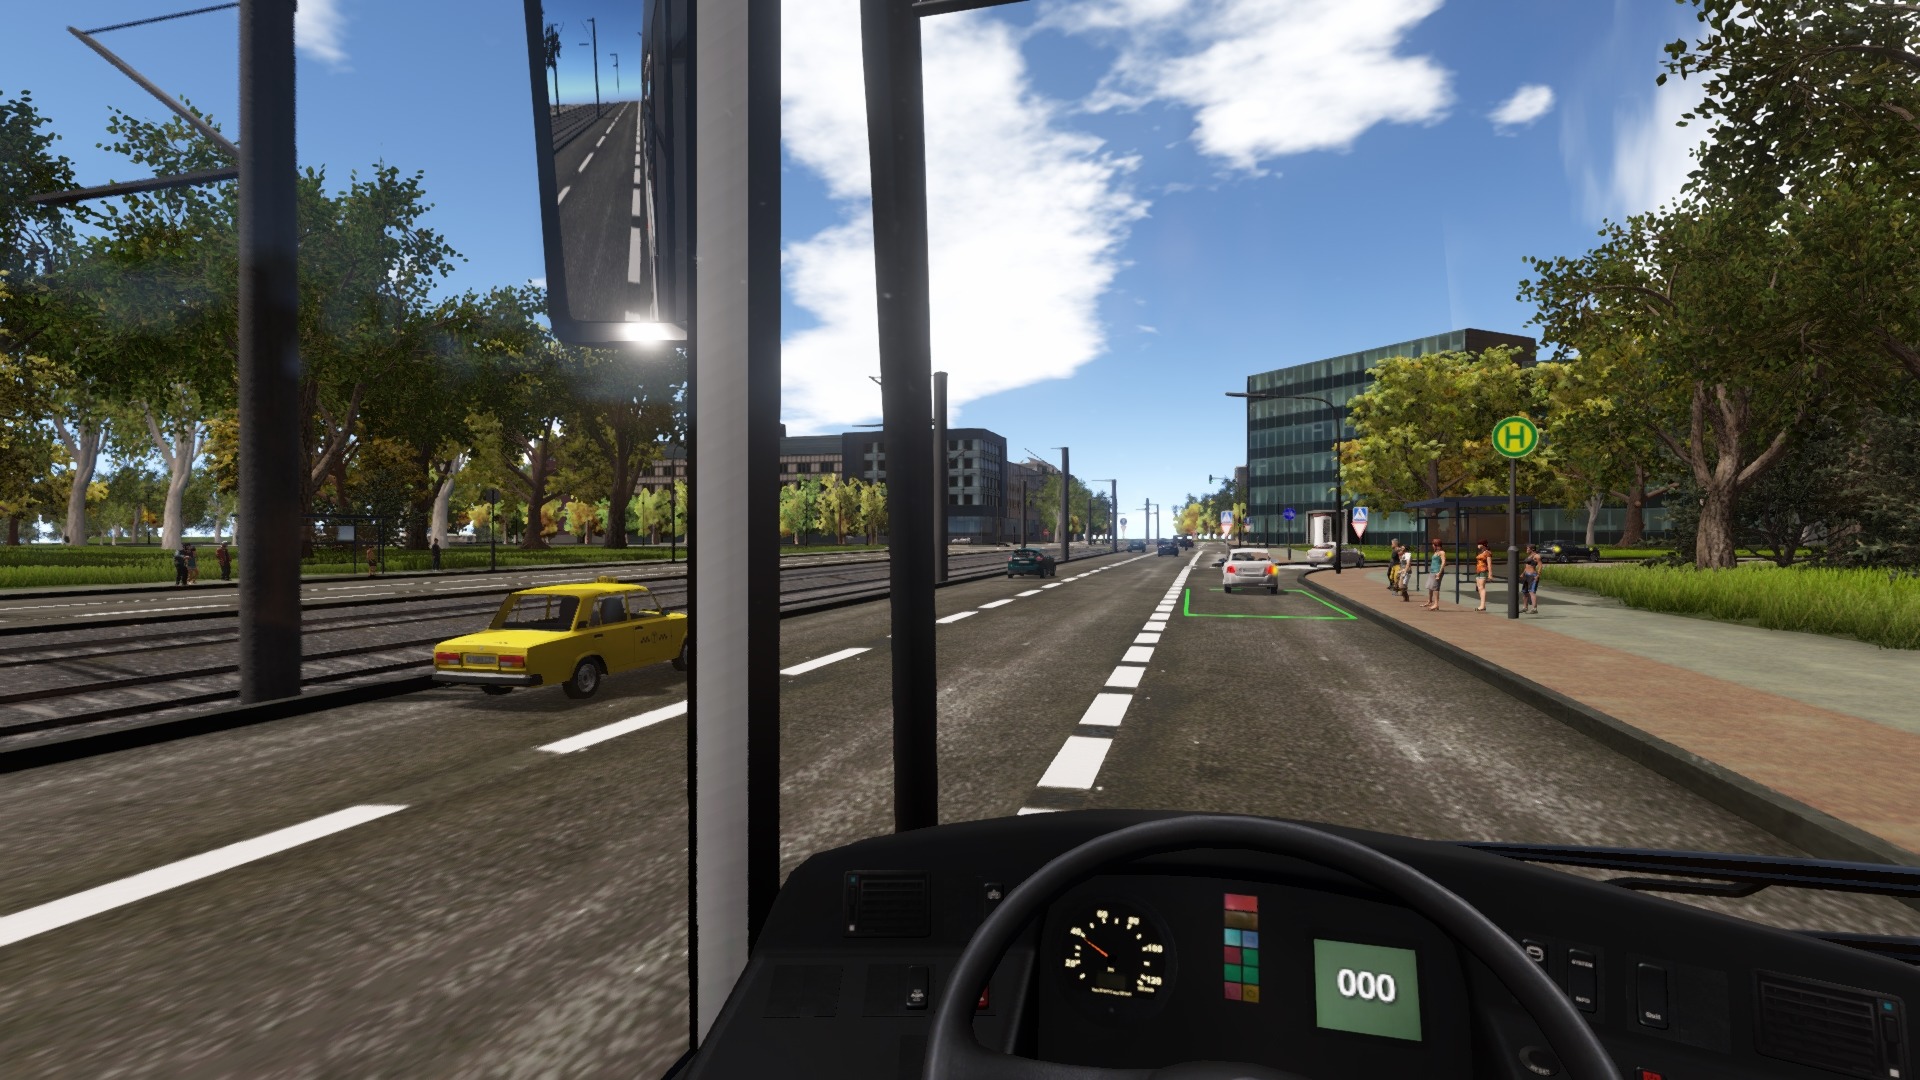 公交司机模拟器2019图片